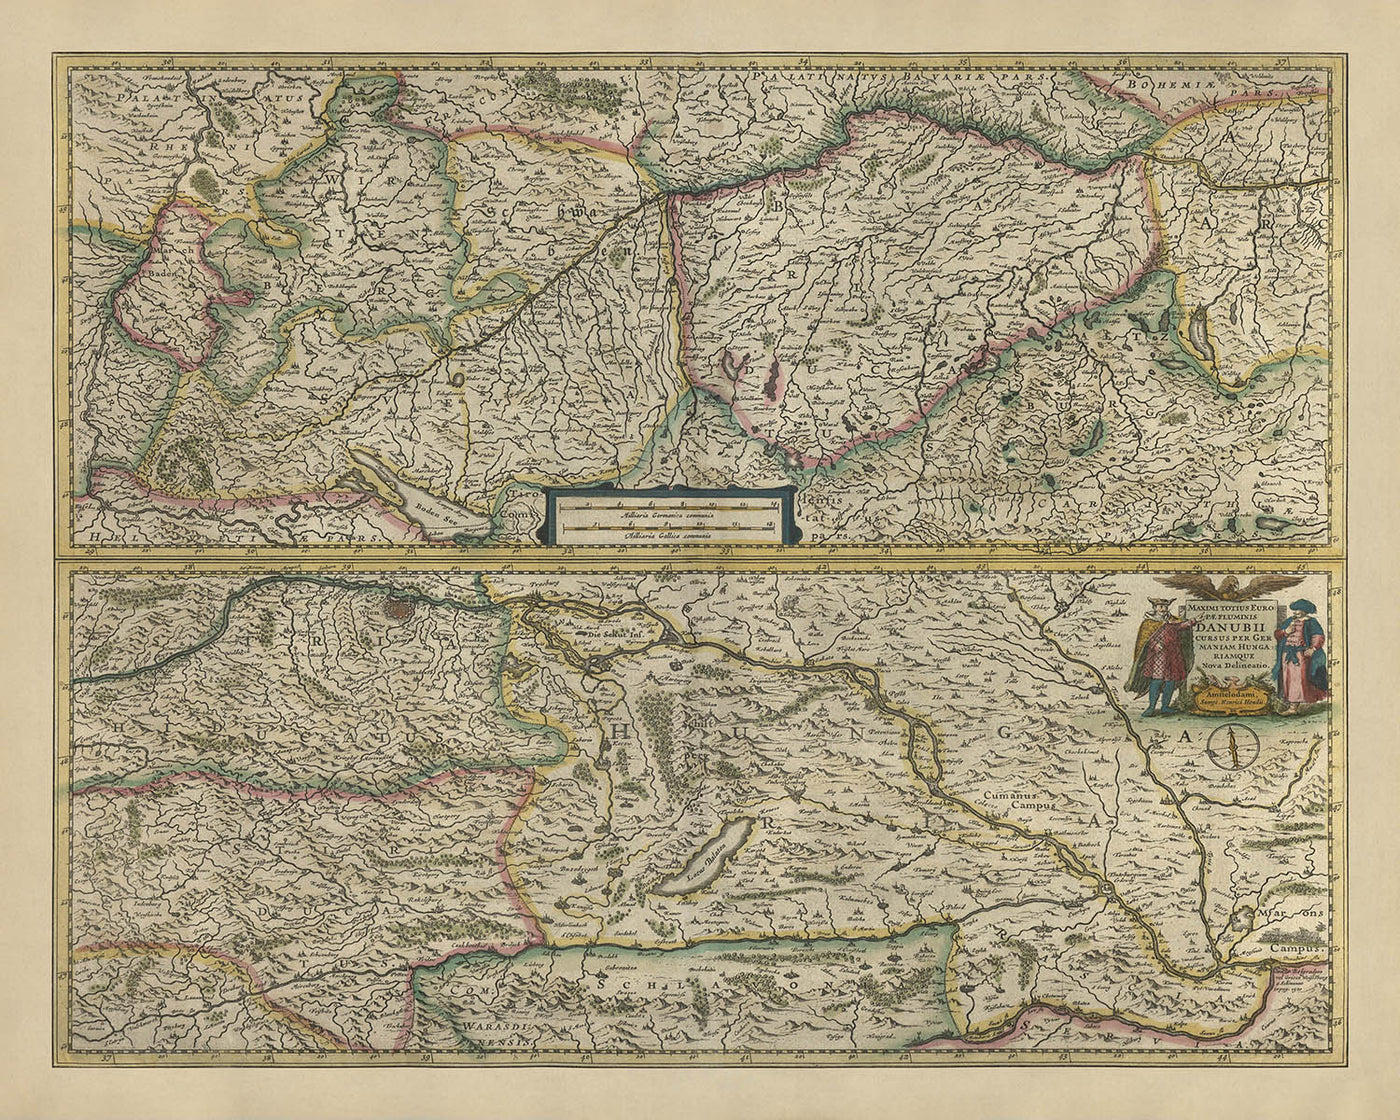 Alte Karte von Mittel- und Osteuropa von Mercator und Hondius, 1633: Donau, Wien, Alpen, Schwarzwald, Karpaten